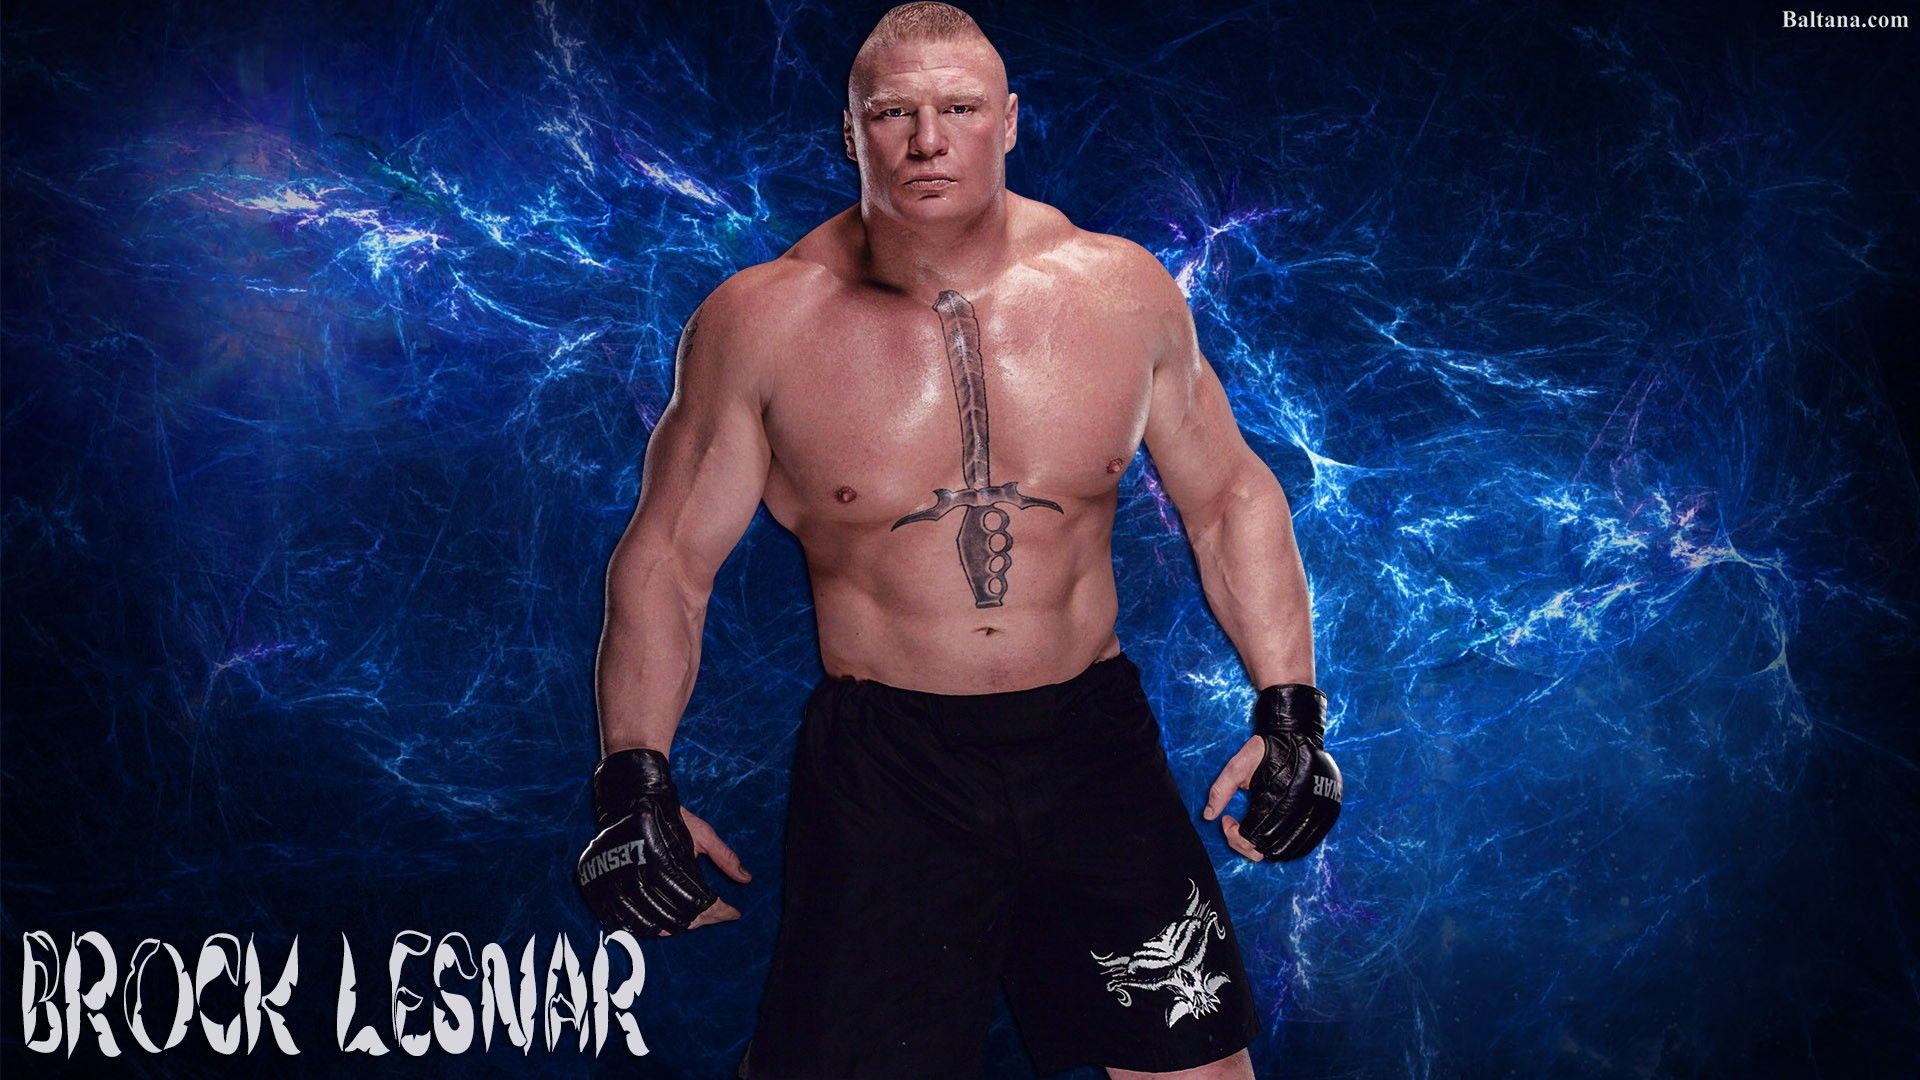 Brock Lesnar Wallpaper Lesnar Background, Image & Photo